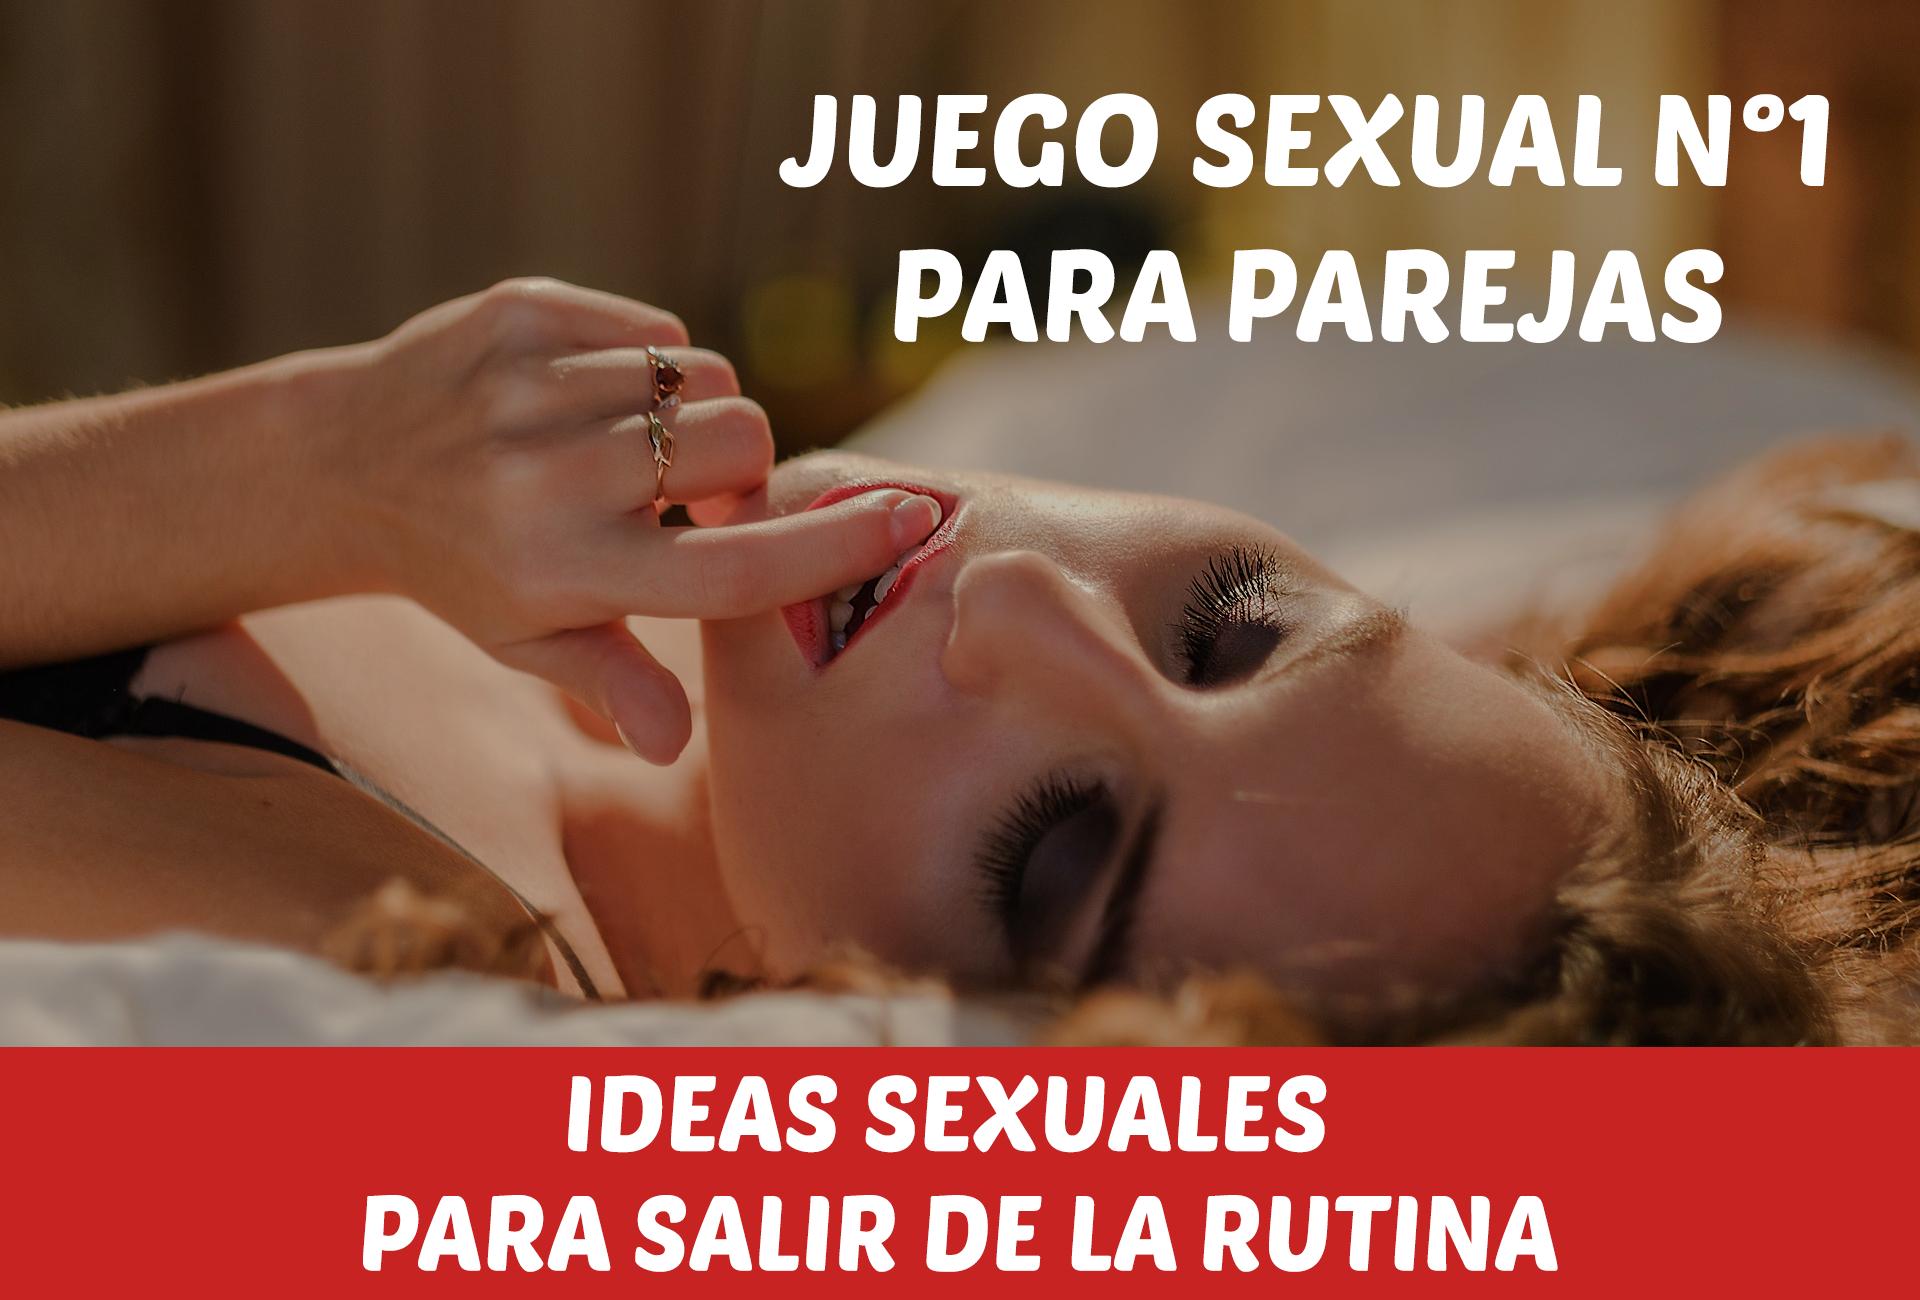 Juego Sexual Retos Para Parejas For Android Apk Download